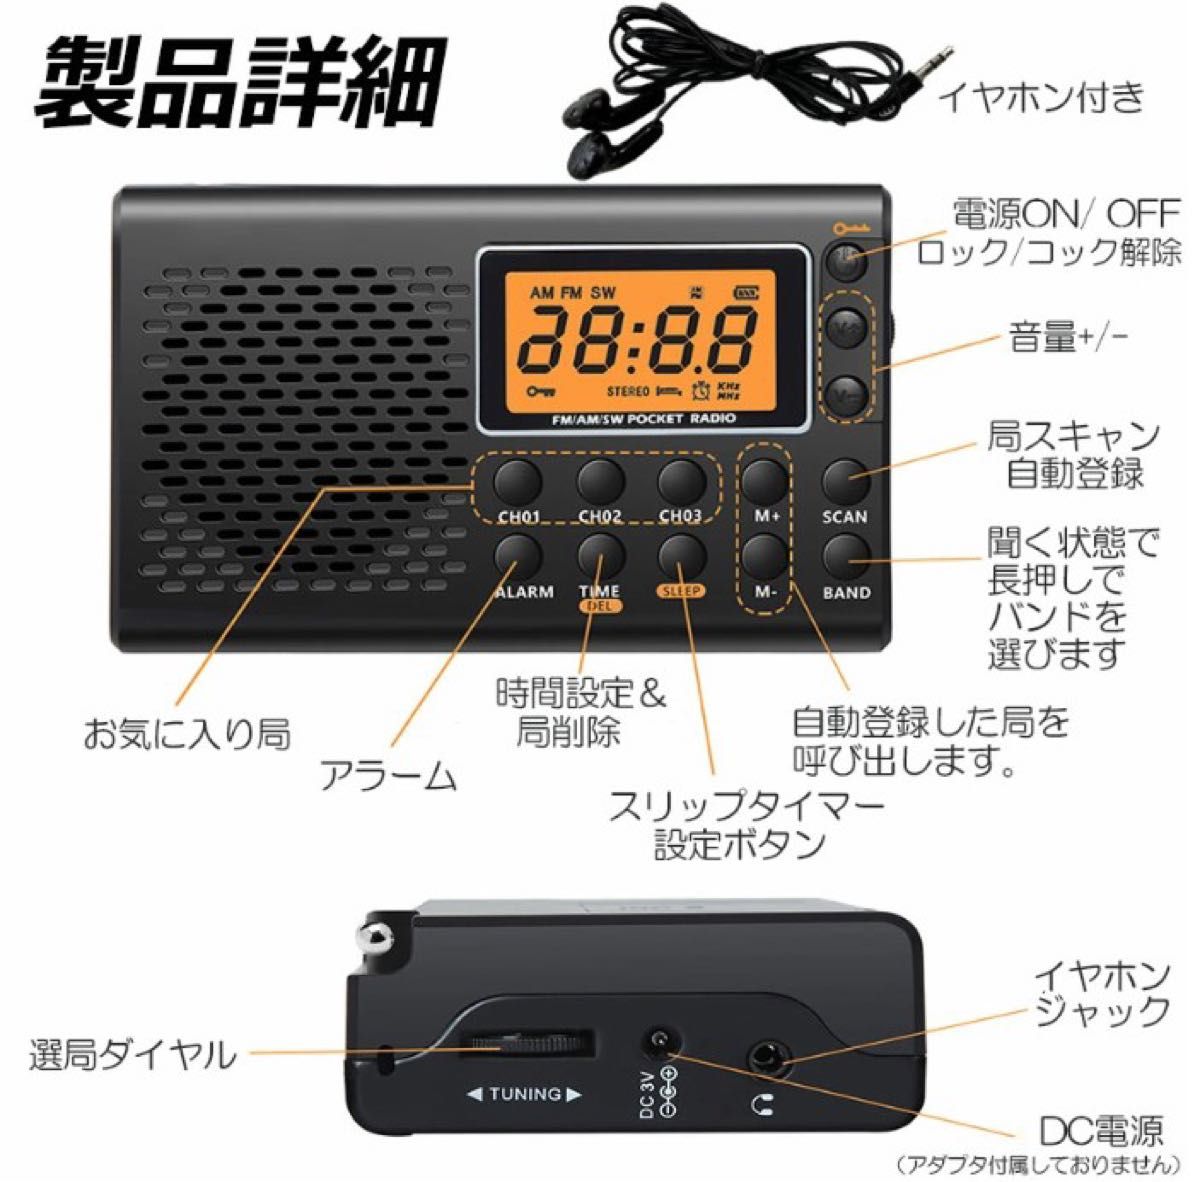 ポケット ラジオ 防災 小型 おしゃれ ポータブルラジオ AM/FM ワイドFM 携帯ラジオ 高感度 日本語取扱説明書付き